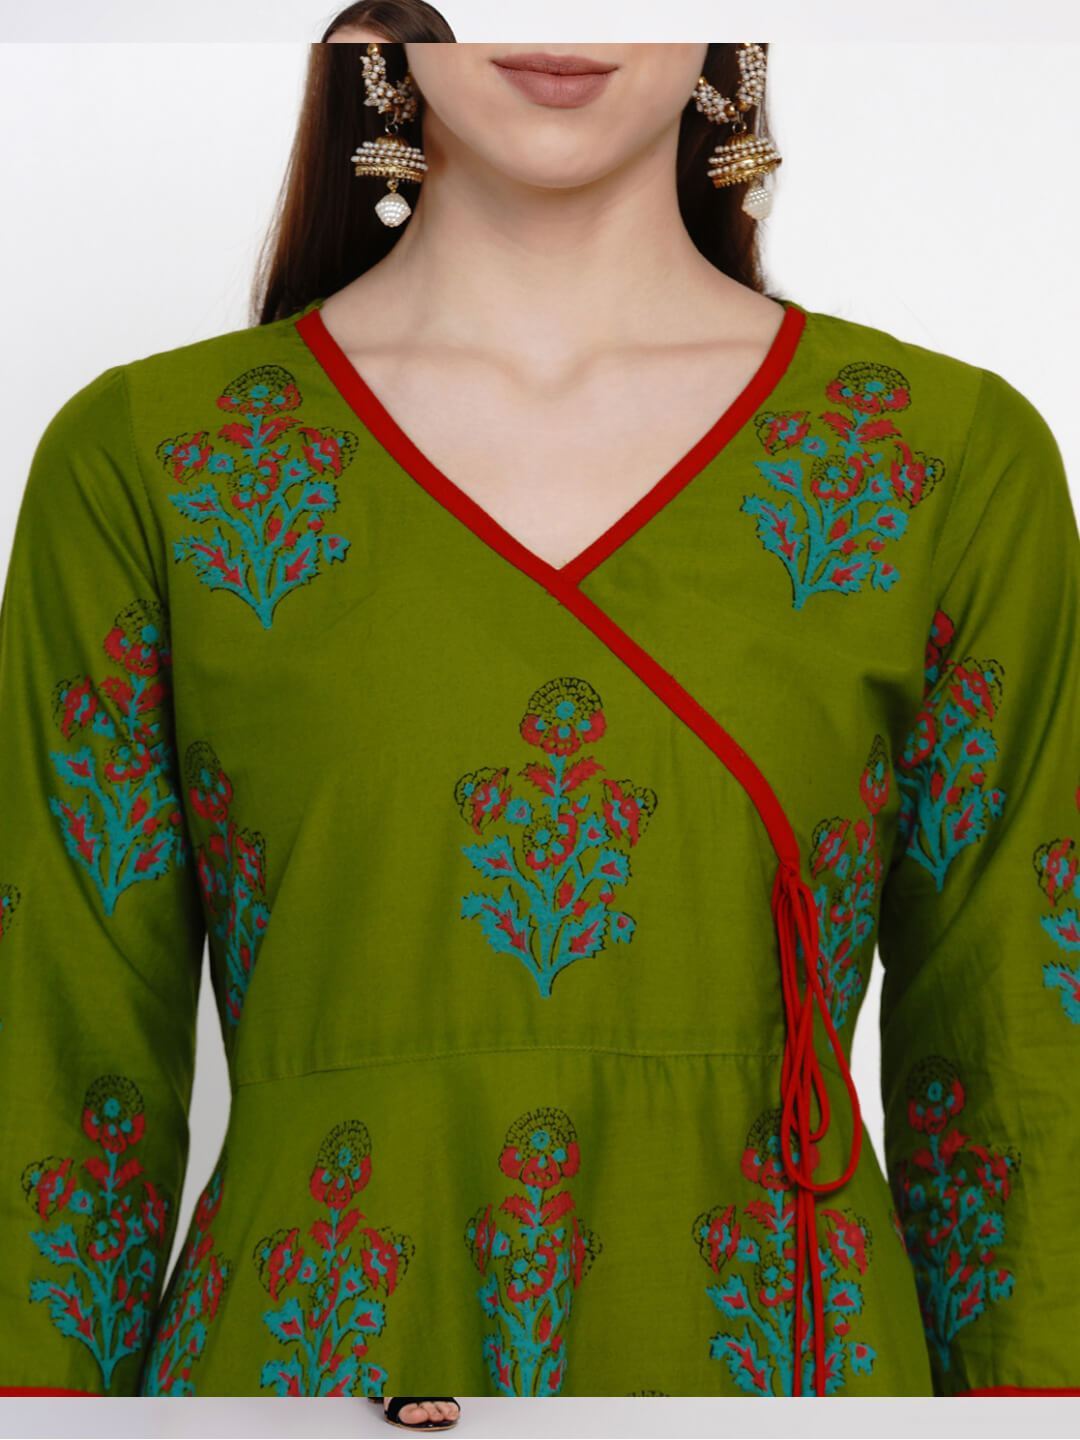 Women's Green Overlap Cotton Anarkali With Ajrakh Hand Block Print - Wahe-Noor